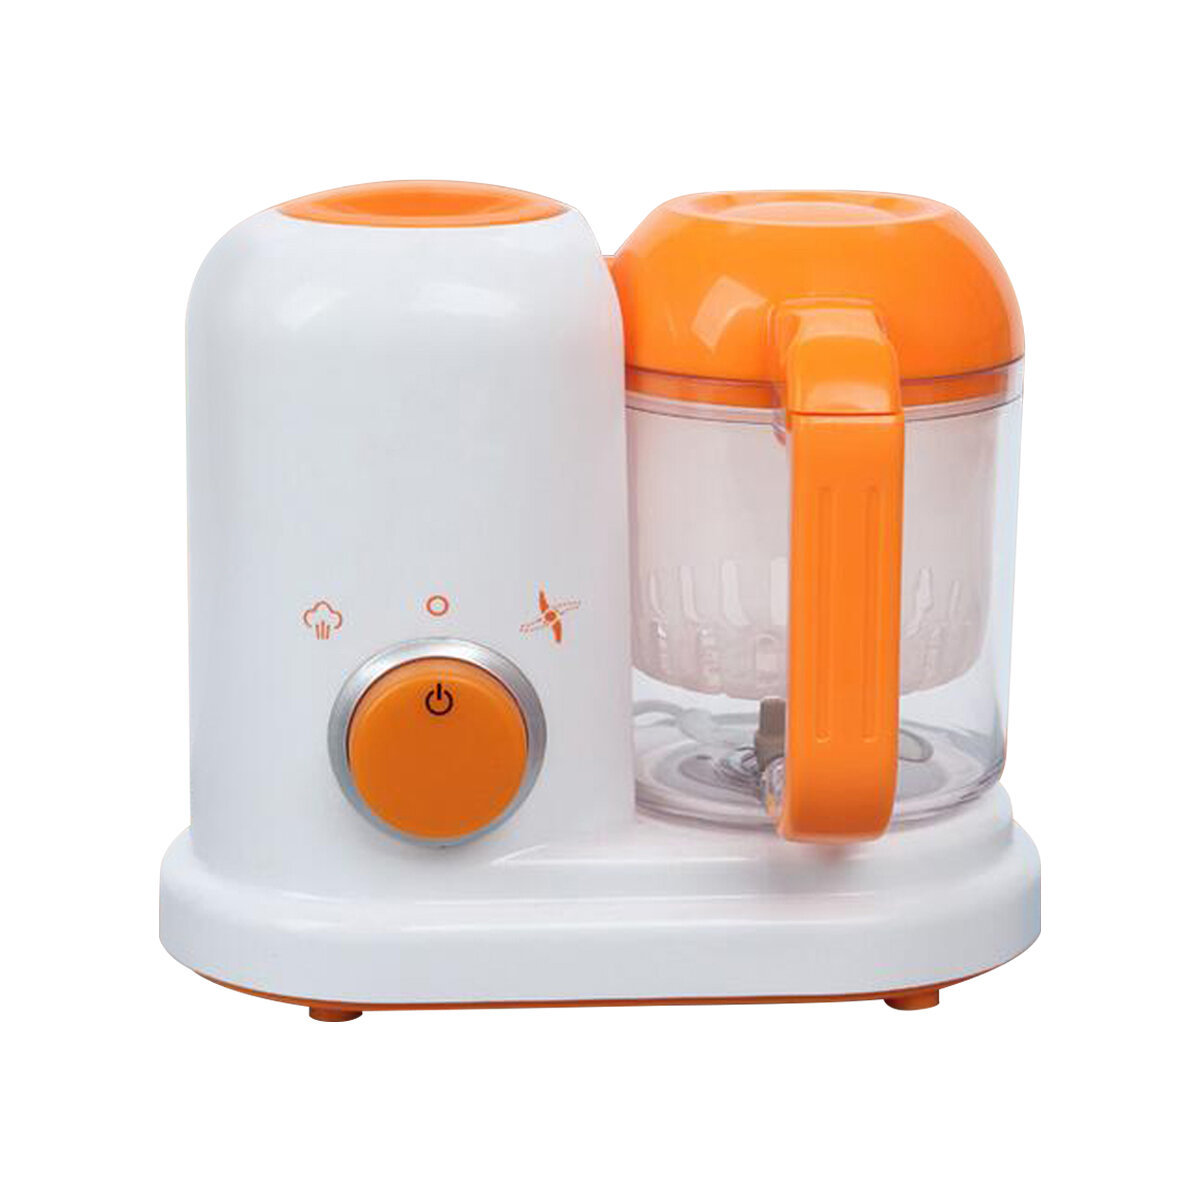 Electric Blender Baby Food Supplement Processor for Steaming, Stirring, Blending